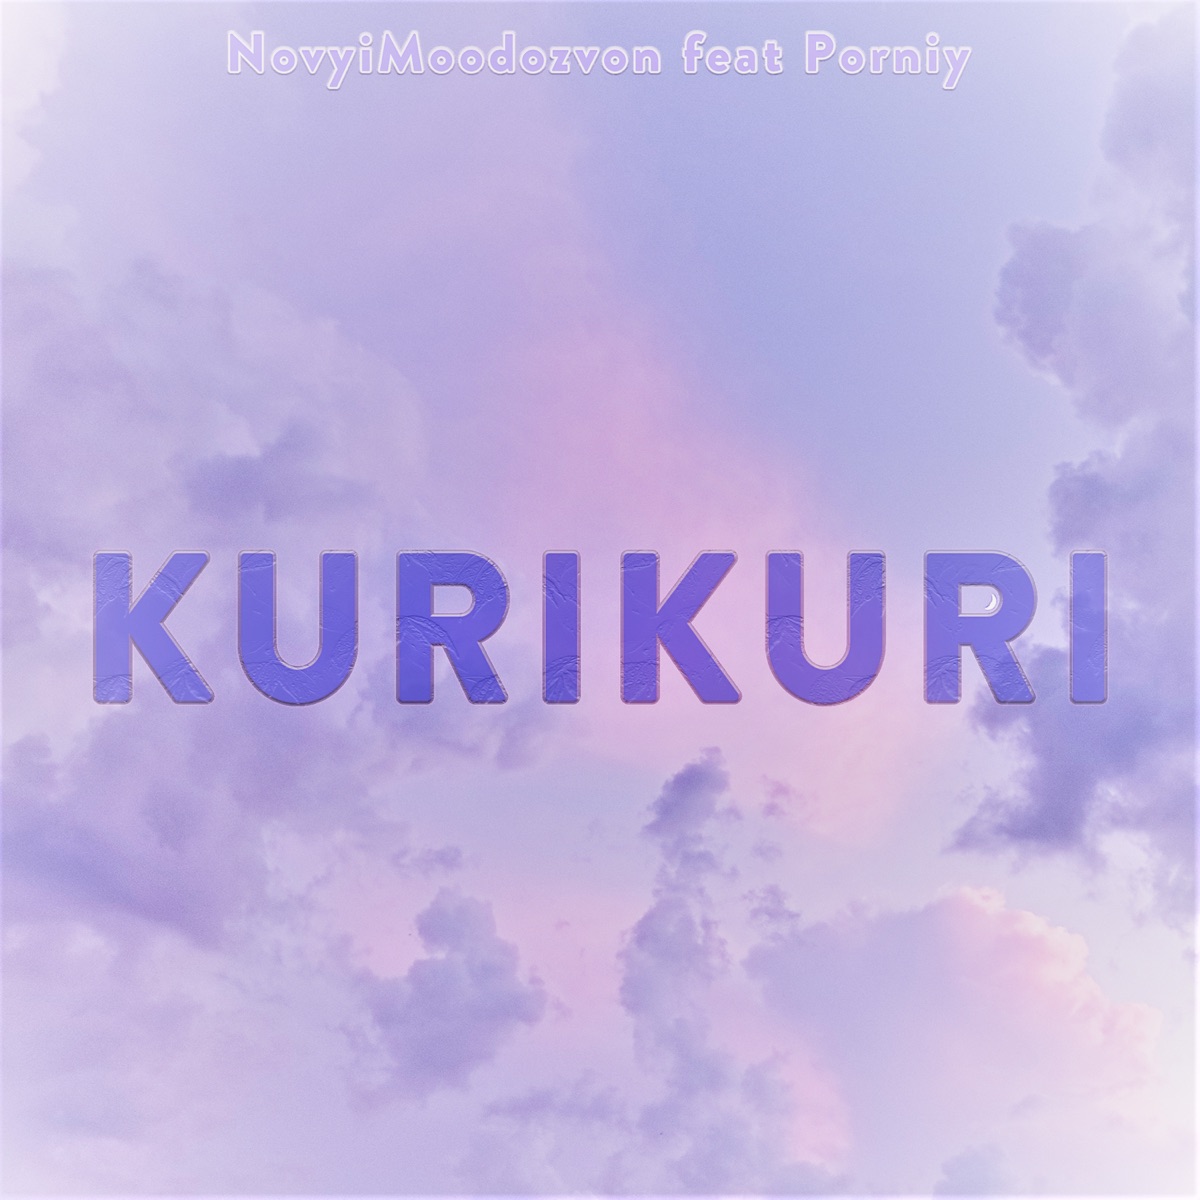 Porniy - Kurikuri (feat. Porniy) - Singleâ€ Ã¡lbum de NovyjMoodozvon en Apple Music